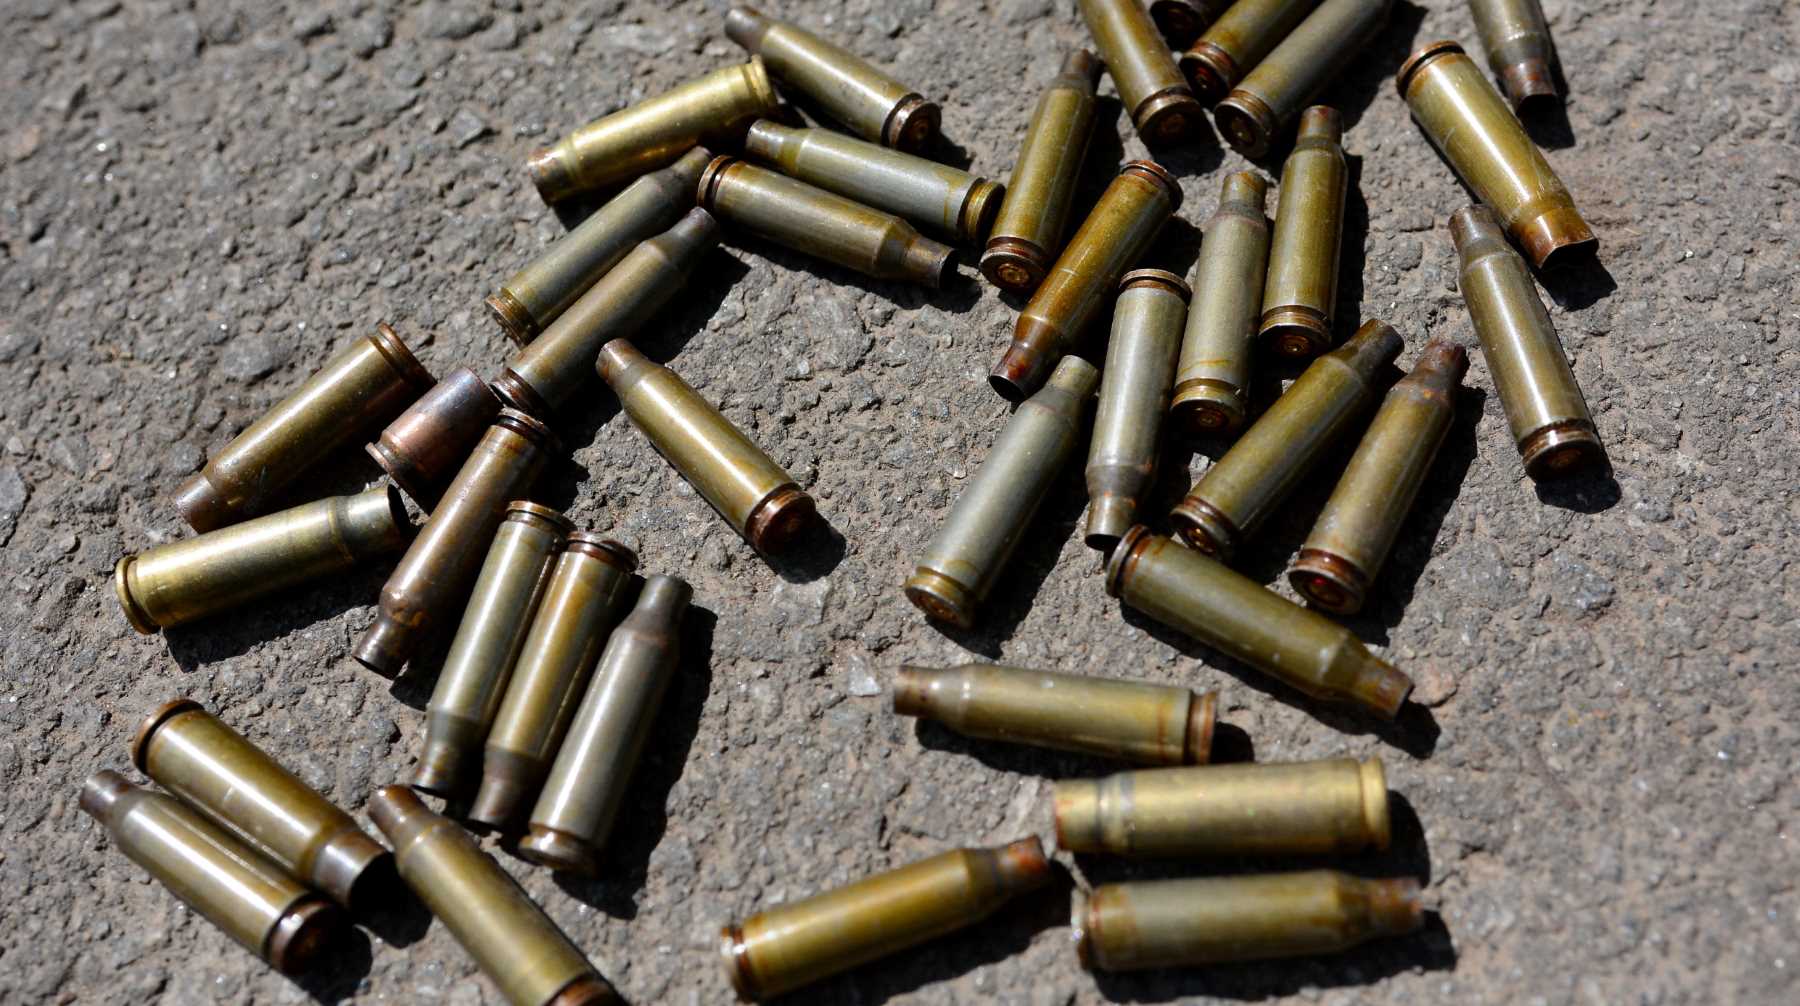 Парламентарий заявил силовикам, что нашел боеприпасы во время раскопок и собирал коллекцию Фото: © Global Look Press / Александр Гусев